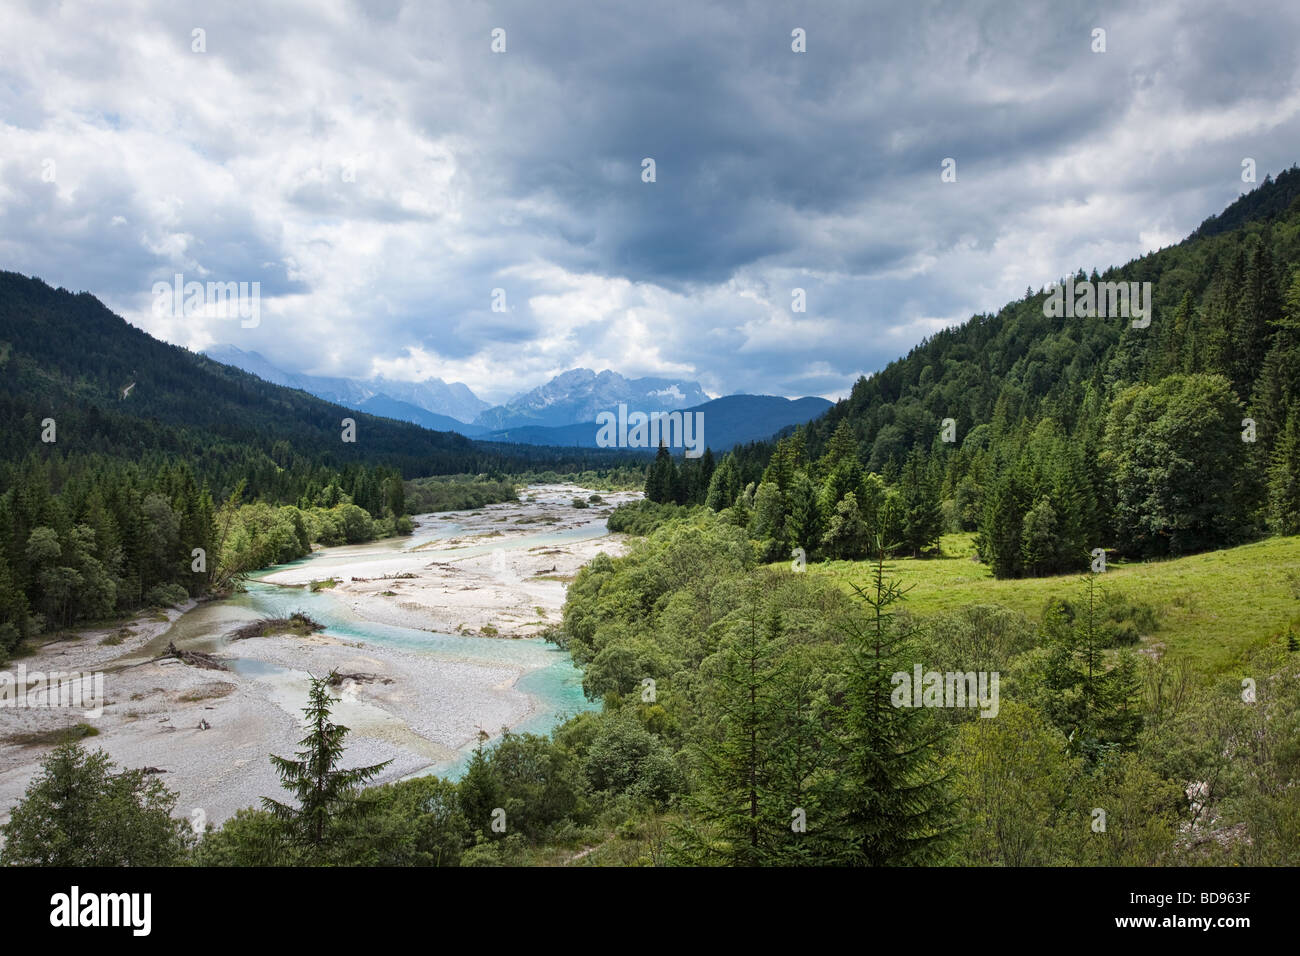 Alemania con vistas al paisaje a lo largo del río Isar, en los Alpes bávaros, Baviera, Alemania, hacia las montañas de Wetterstein Foto de stock